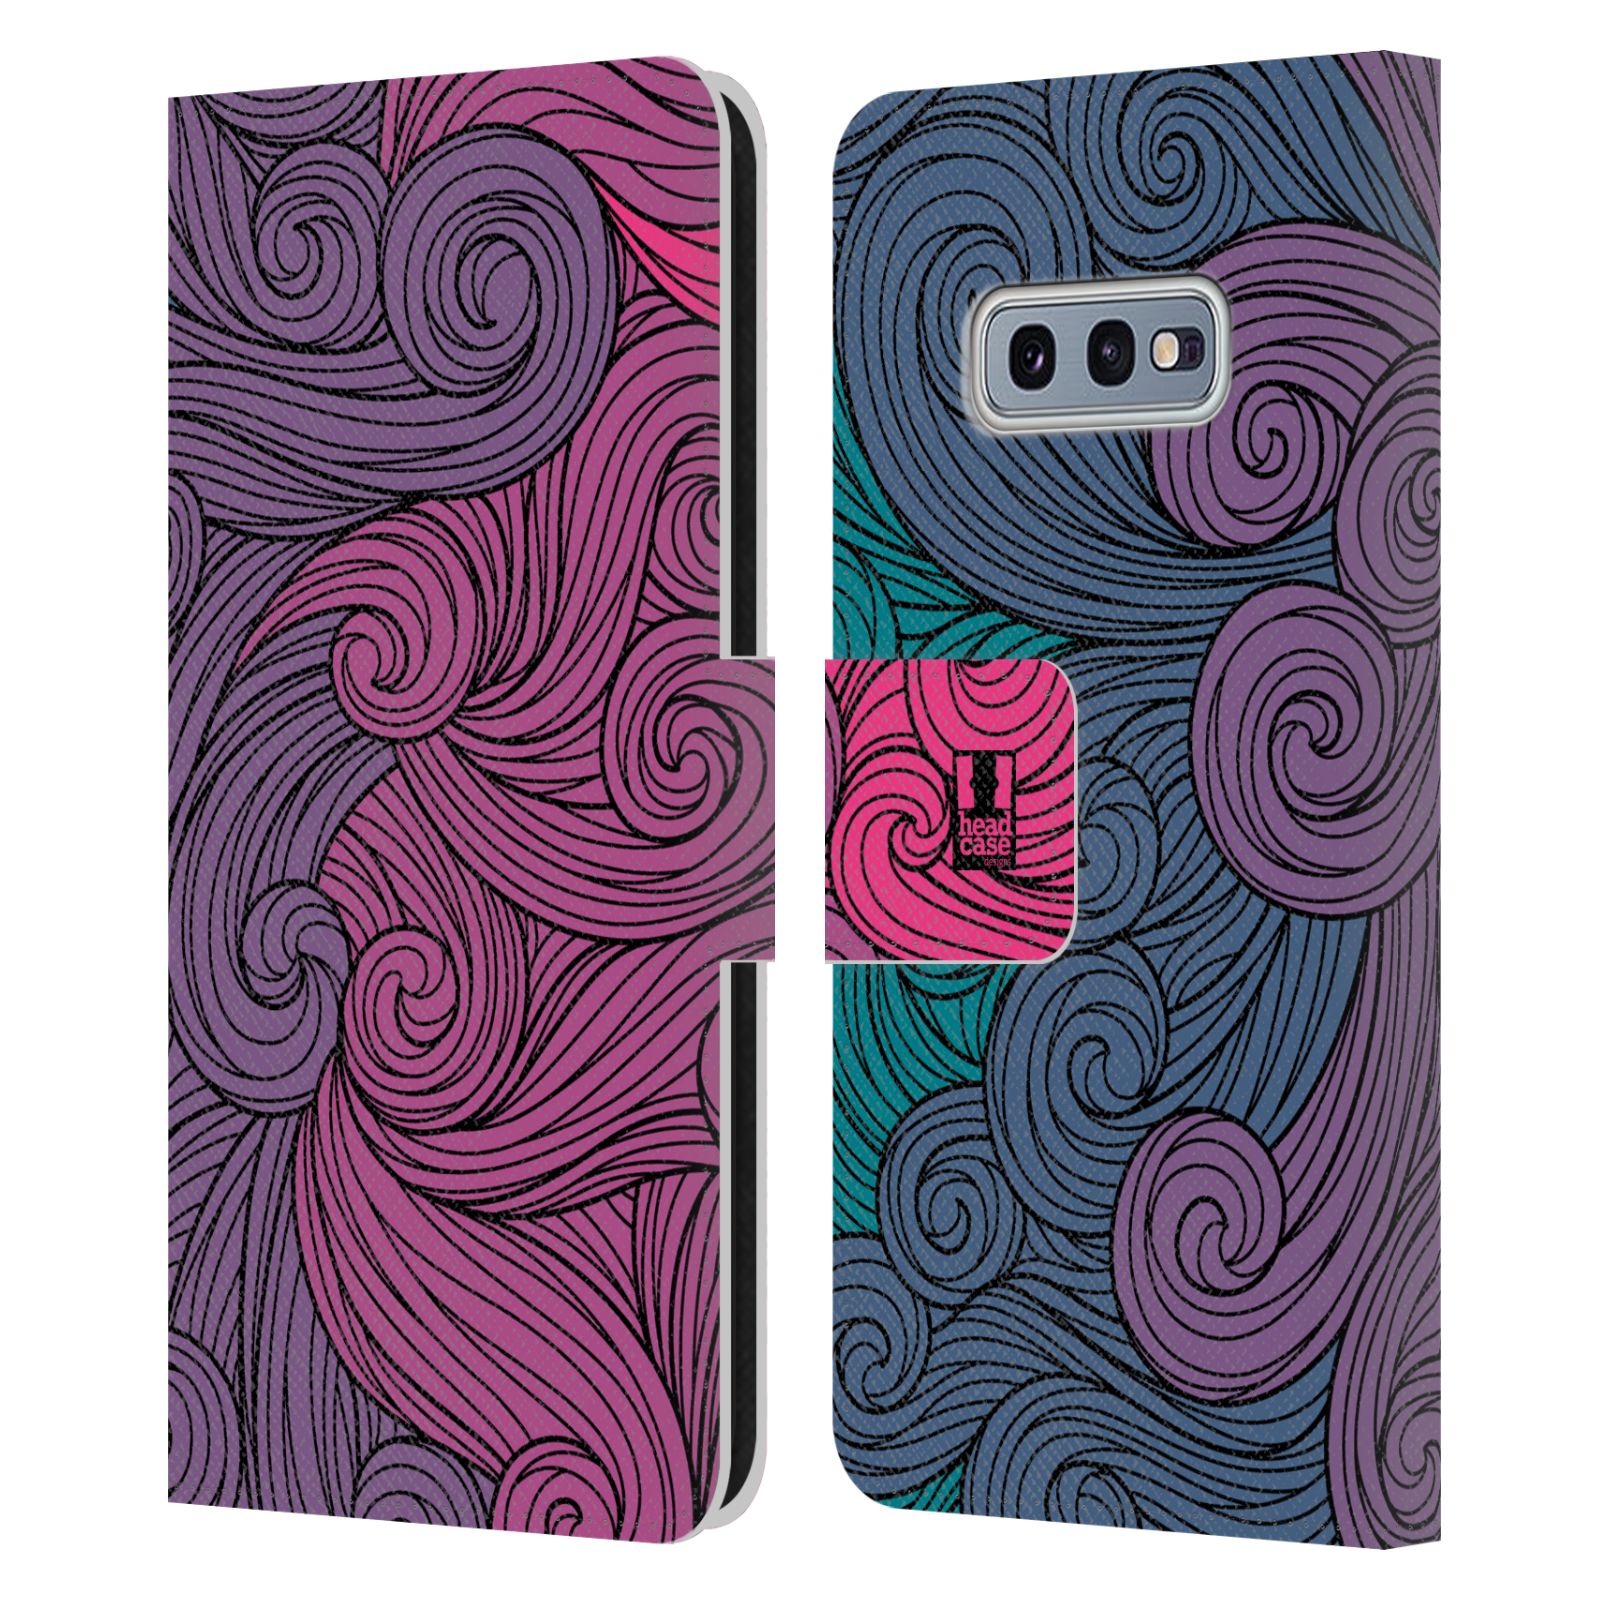 Pouzdro HEAD CASE na mobil Samsung Galaxy S10e barevné vlny růžová a modrá